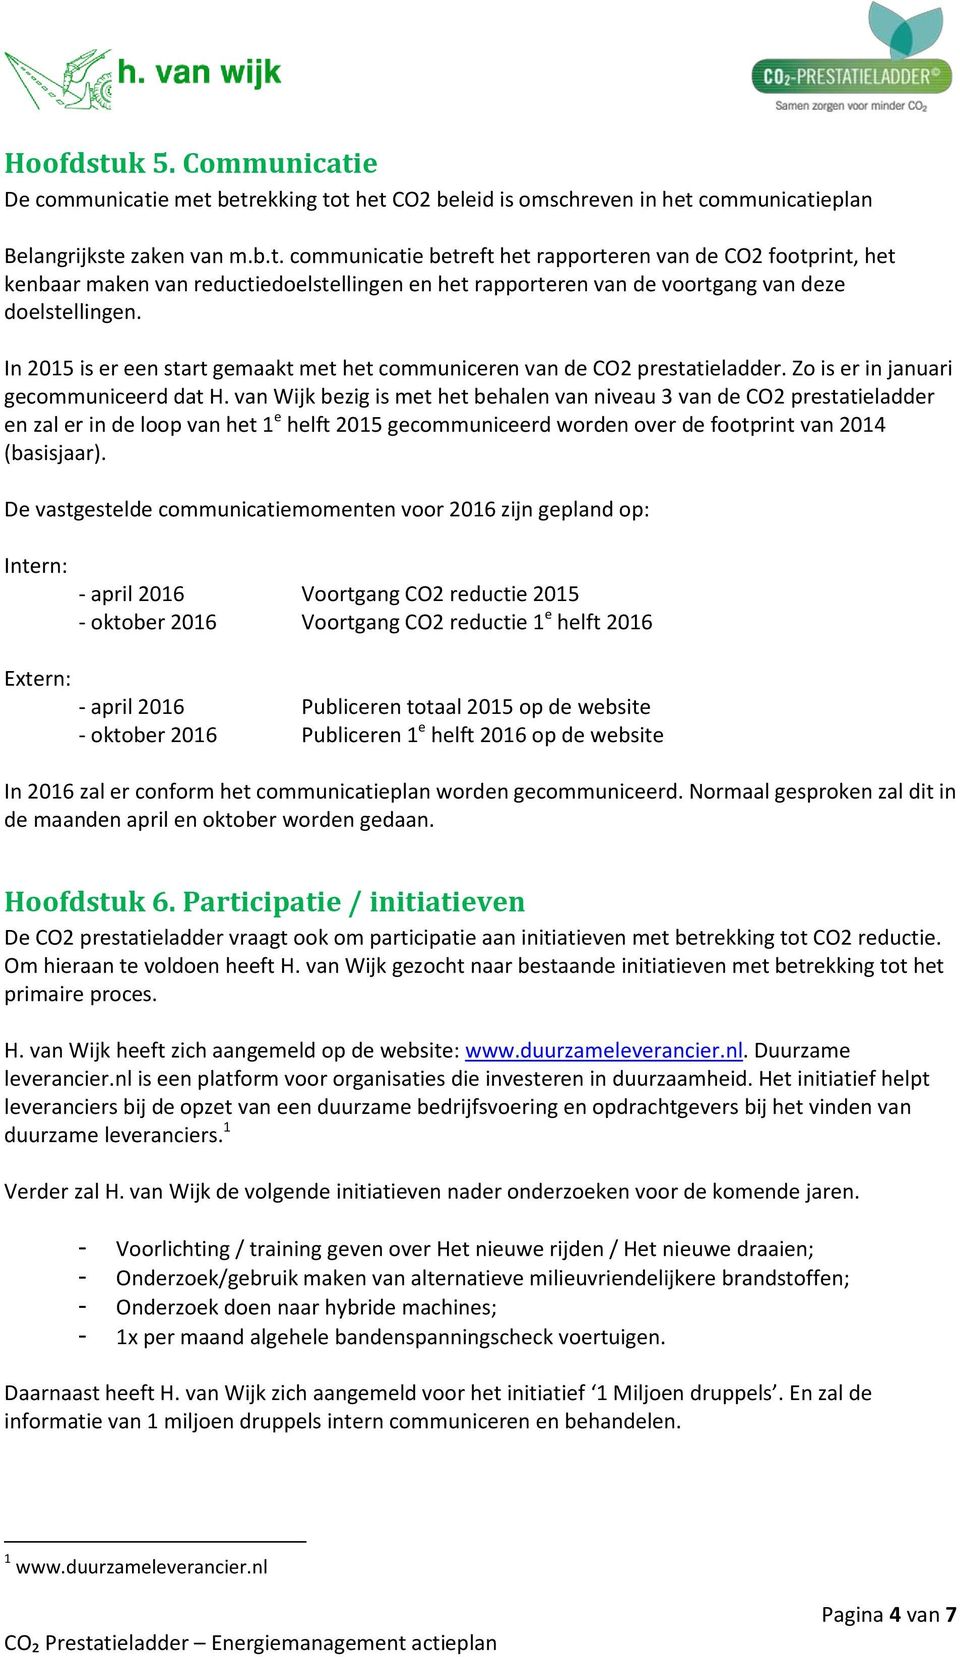 van Wijk bezig is met het behalen van niveau 3 van de CO2 prestatieladder en zal er in de loop van het 1 e helft 2015 gecommuniceerd worden over de footprint van 2014 (basisjaar).